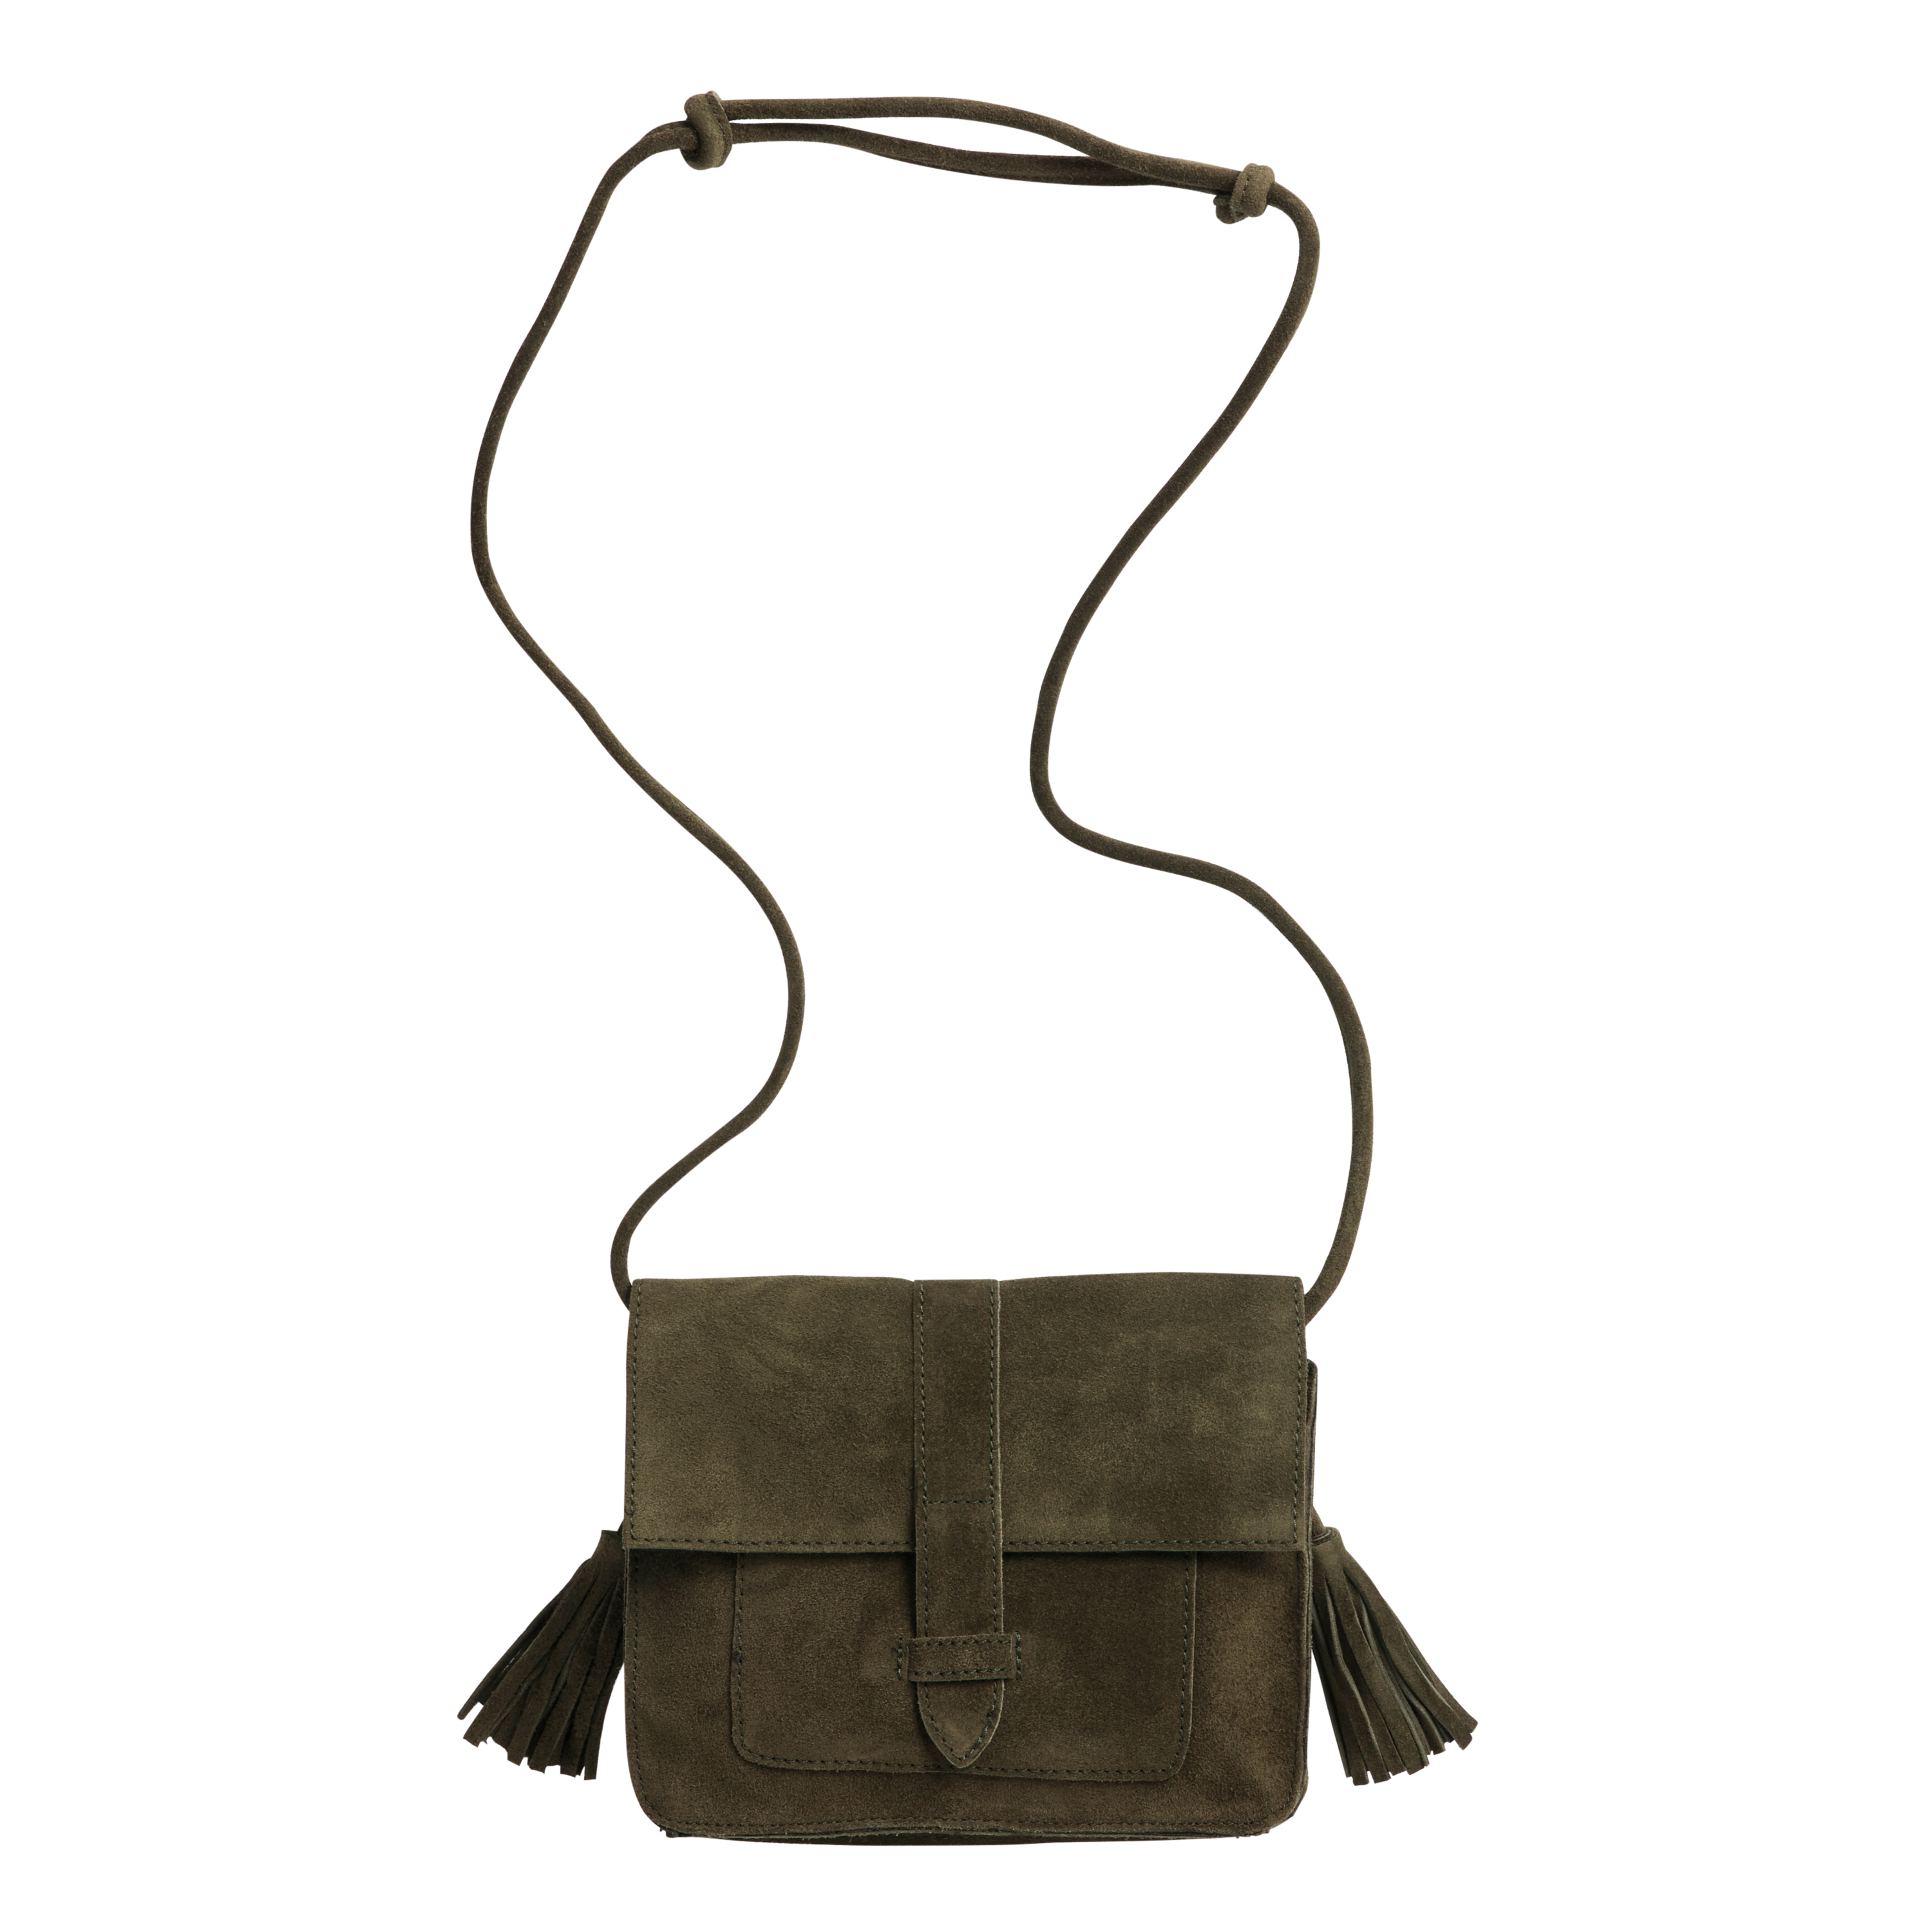 Southwest Crossbody Bag With Tassel-western Shoulder Bag 